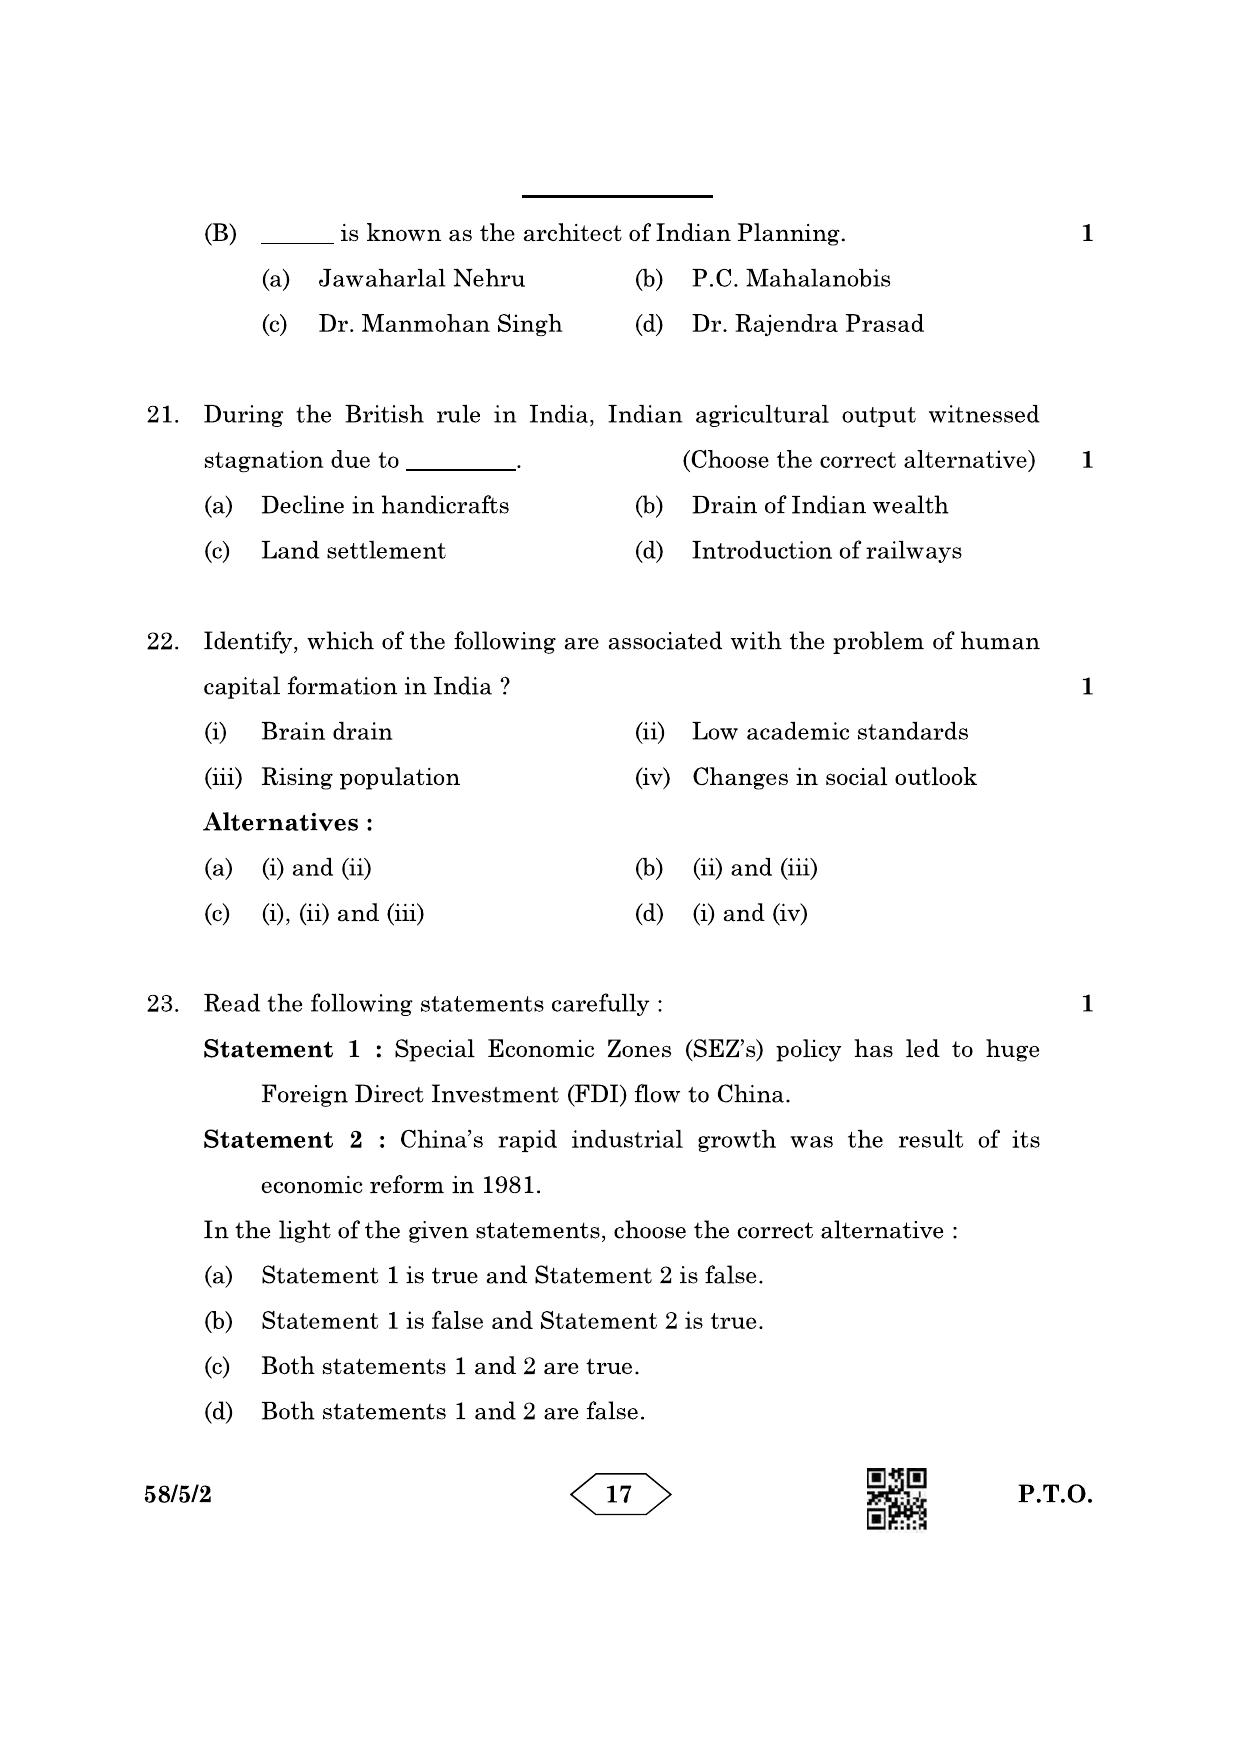 CBSE Class 12 58-5-2 Economics 2023 Question Paper - Page 17